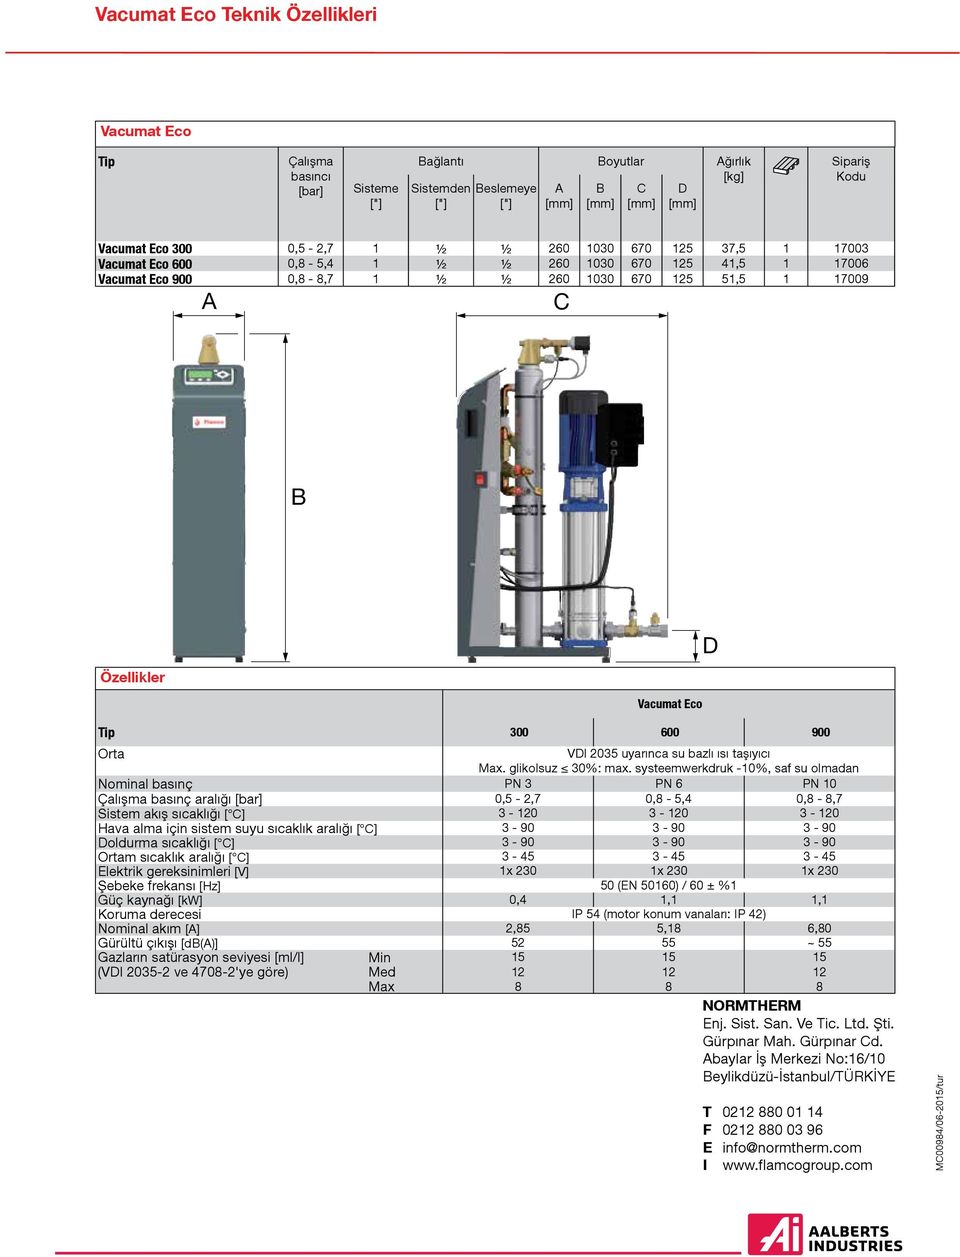 systeemwerkdruk -%, saf su olmadan Nominal basınç PN PN 6 PN Çalışma basınç aralığı [bar],5 -,7,8-5,4,8-8,7 Sistem akış sıcaklığı [ C] - - - Hava alma için sistem suyu sıcaklık aralığı [ C] - 9-9 - 9